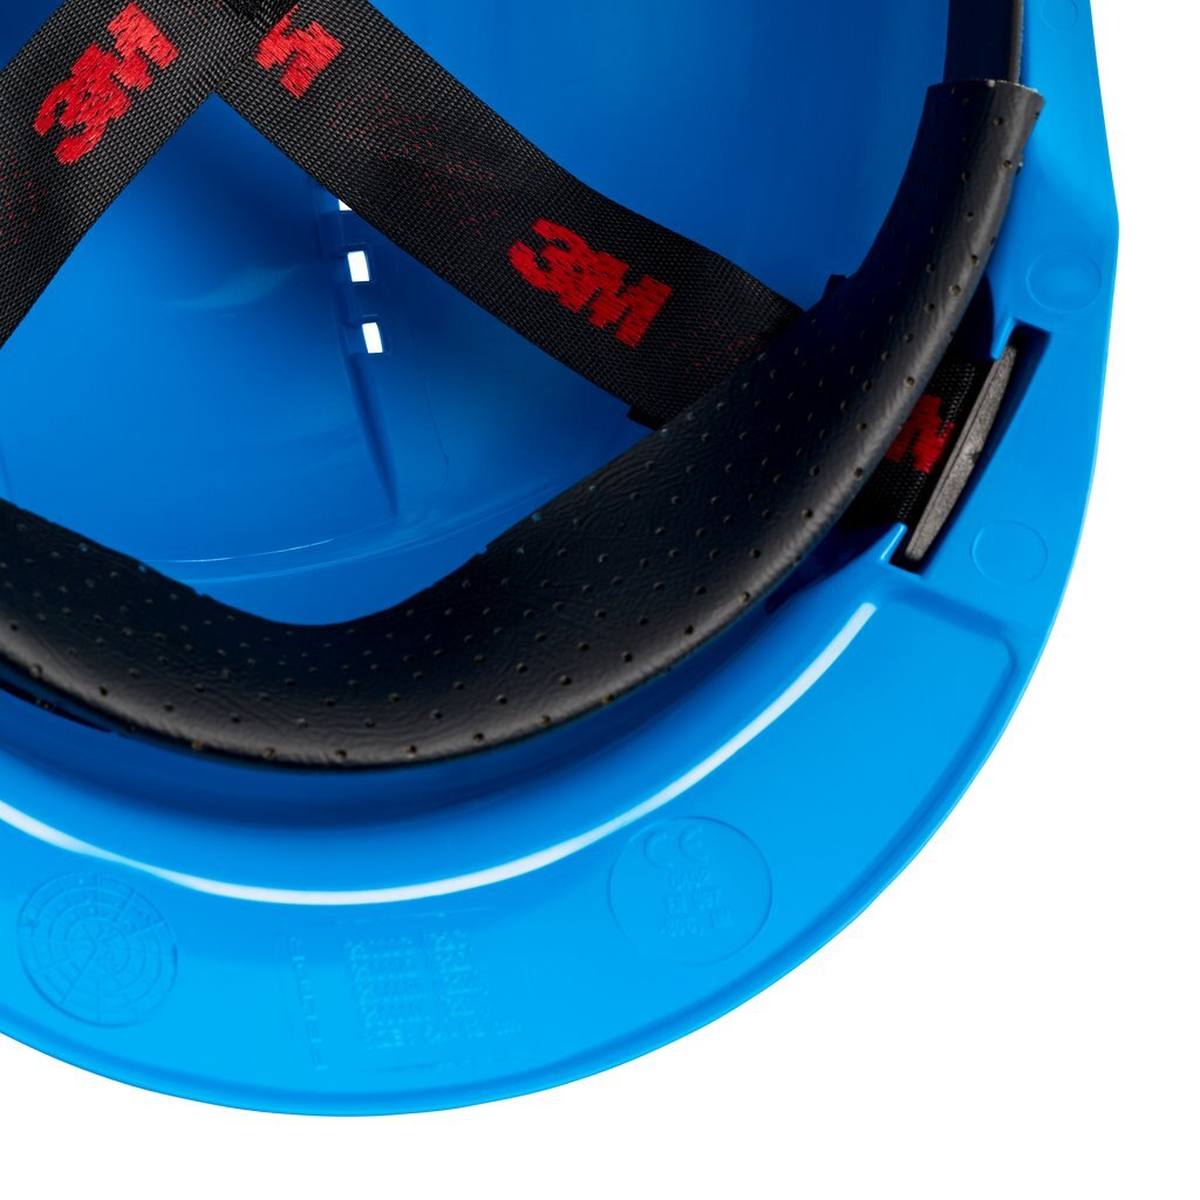 3M G3000 casque de protection G30CUB en bleu, ventilé, avec uvicator, pinlock et bande de soudure en plastique